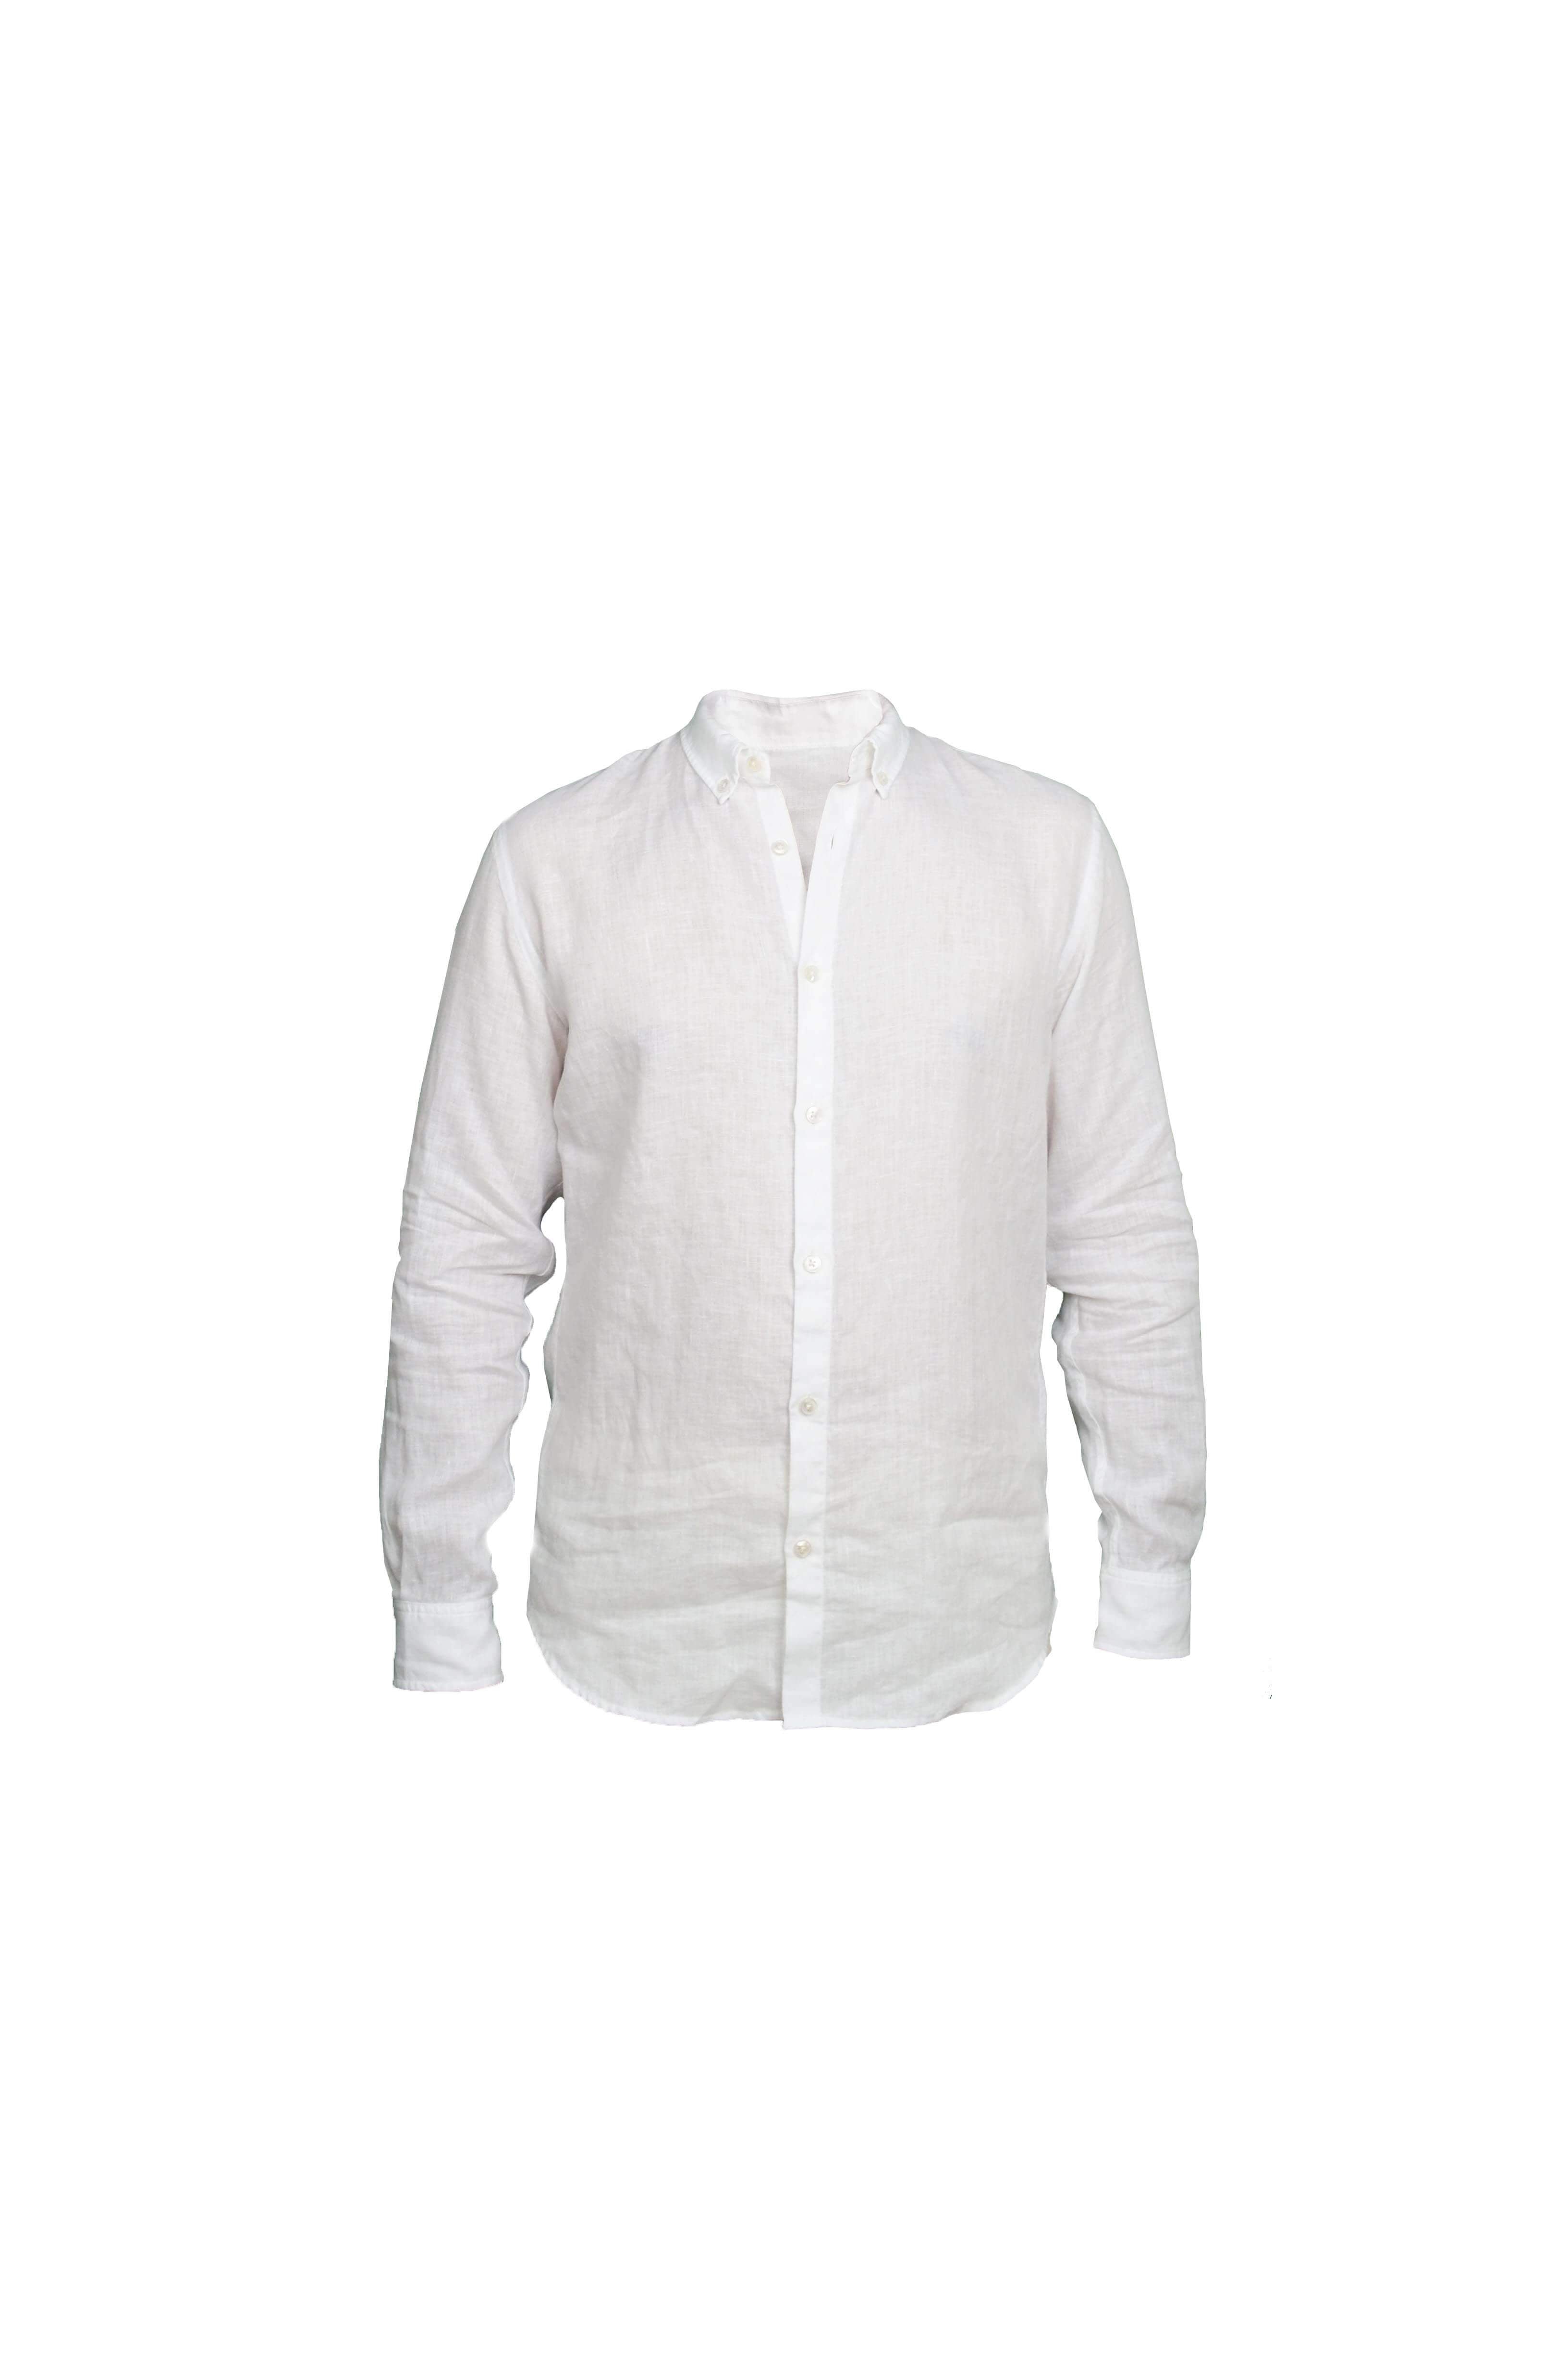 Faros White Linen Shirt - FAROS LINEN